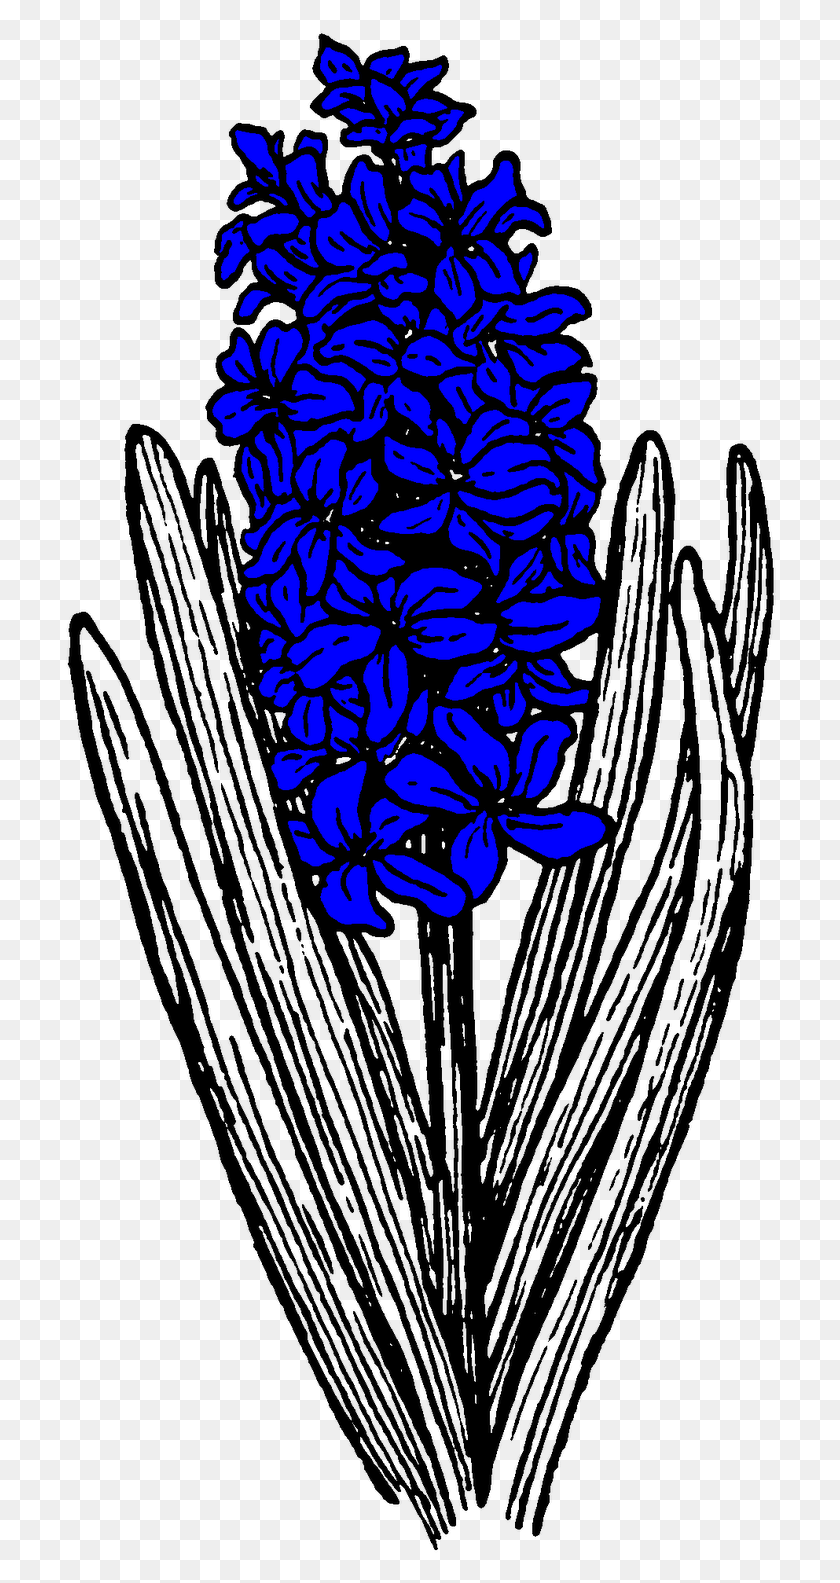 712x1523 Jacintos En Flor En El Jardín De La Pared De Pell, Tatuaje De Jacinto Blanco Y Negro, Gráficos, Diseño Floral Hd Png